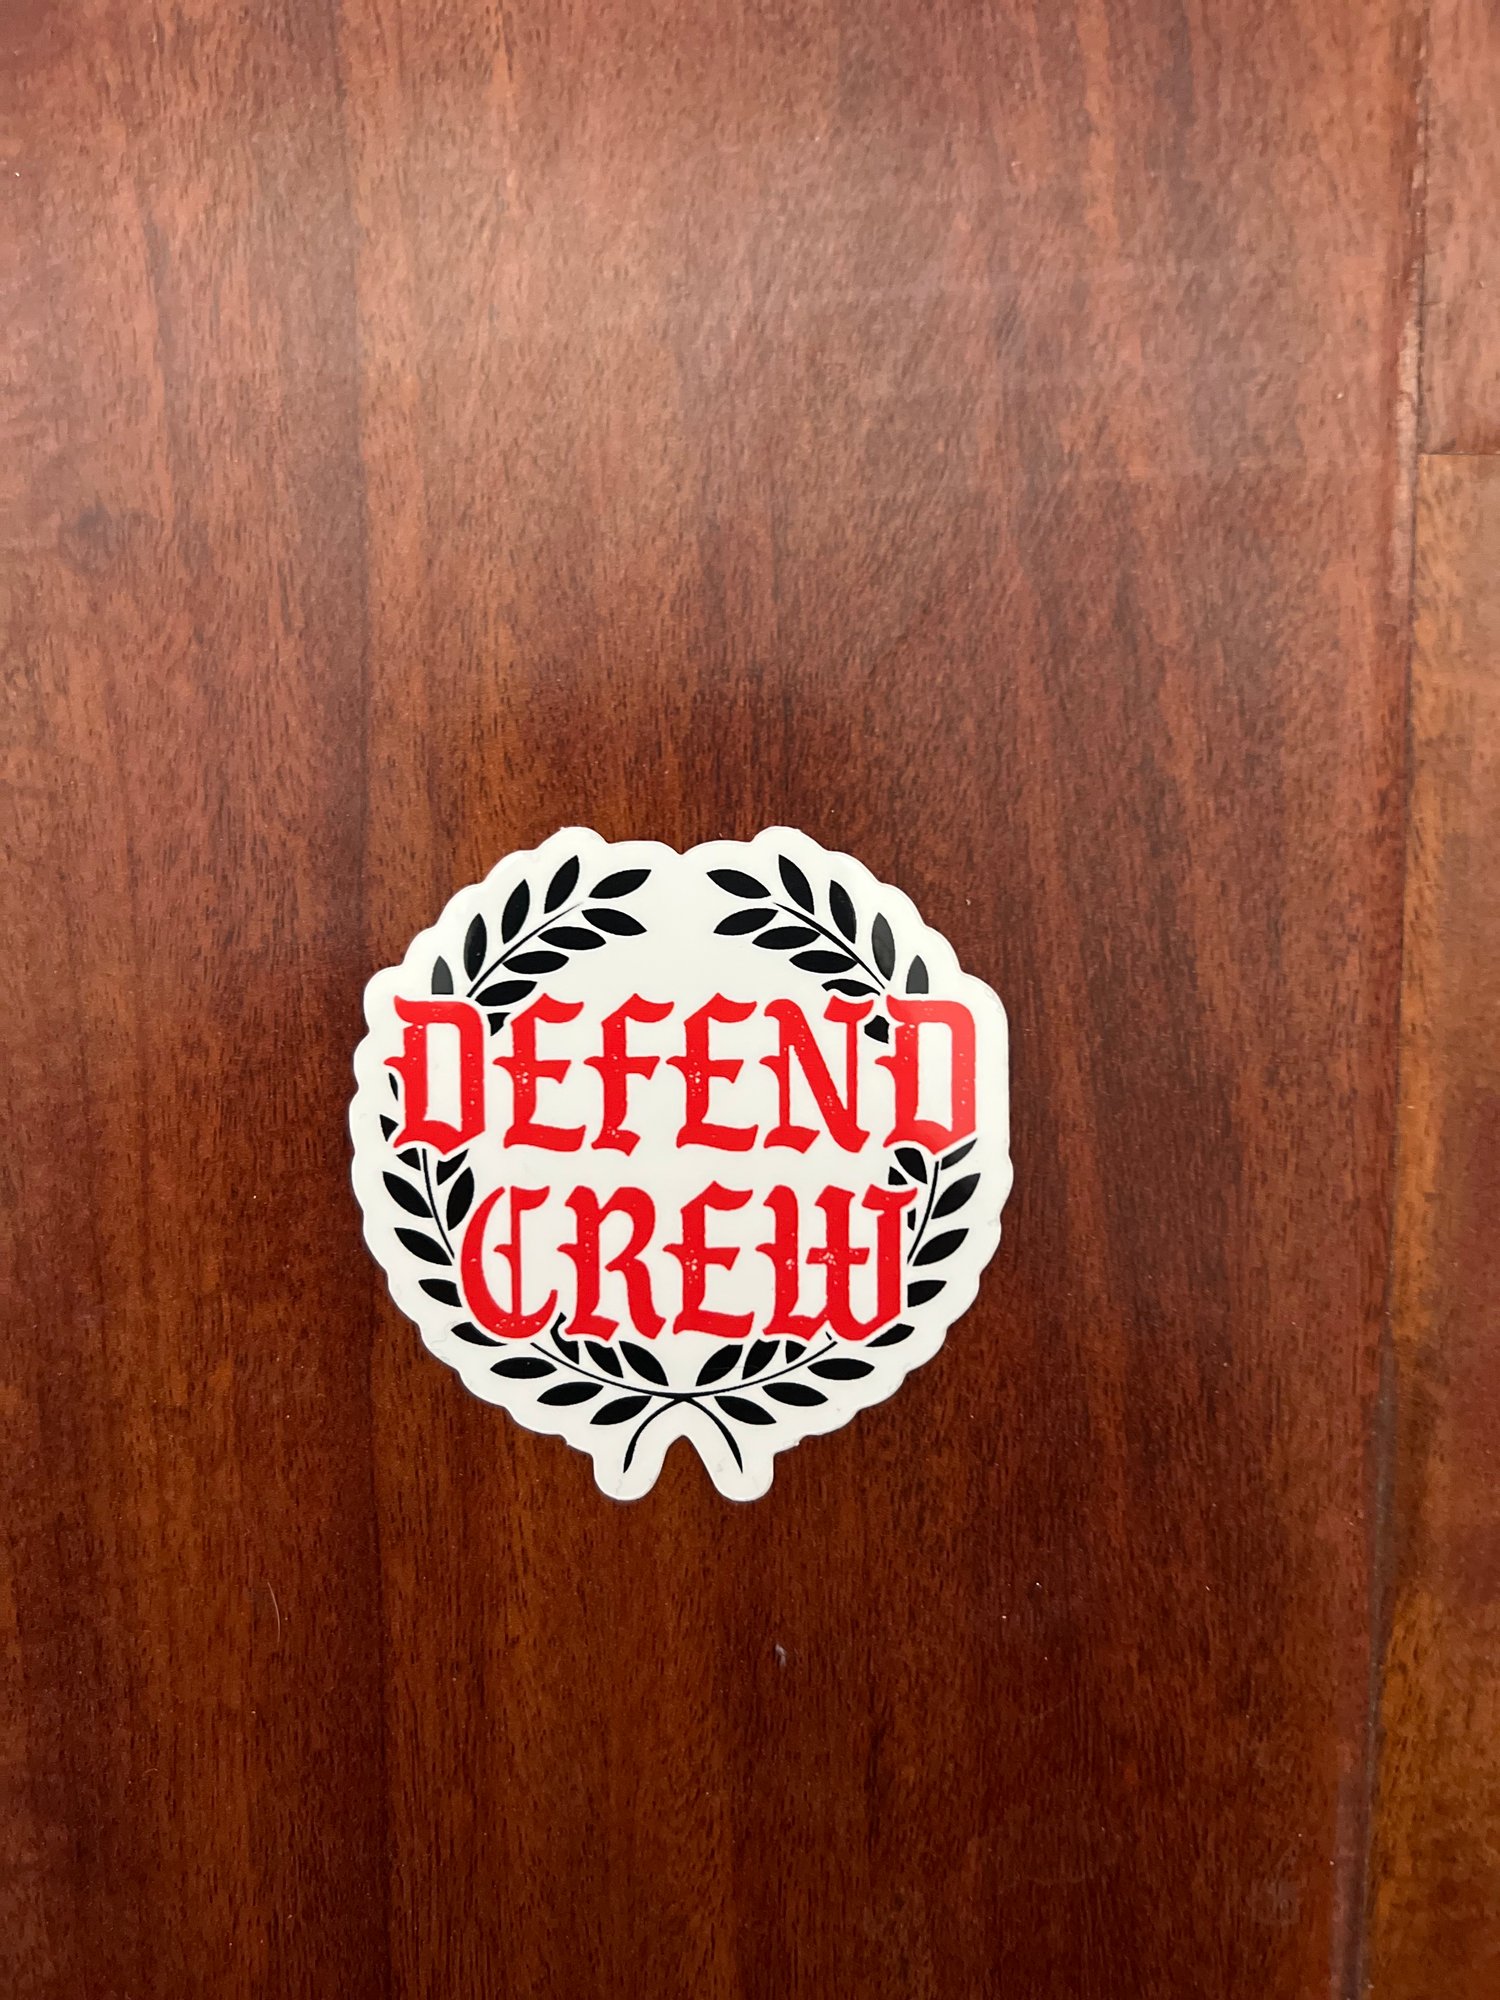 Defend Crew Sticker